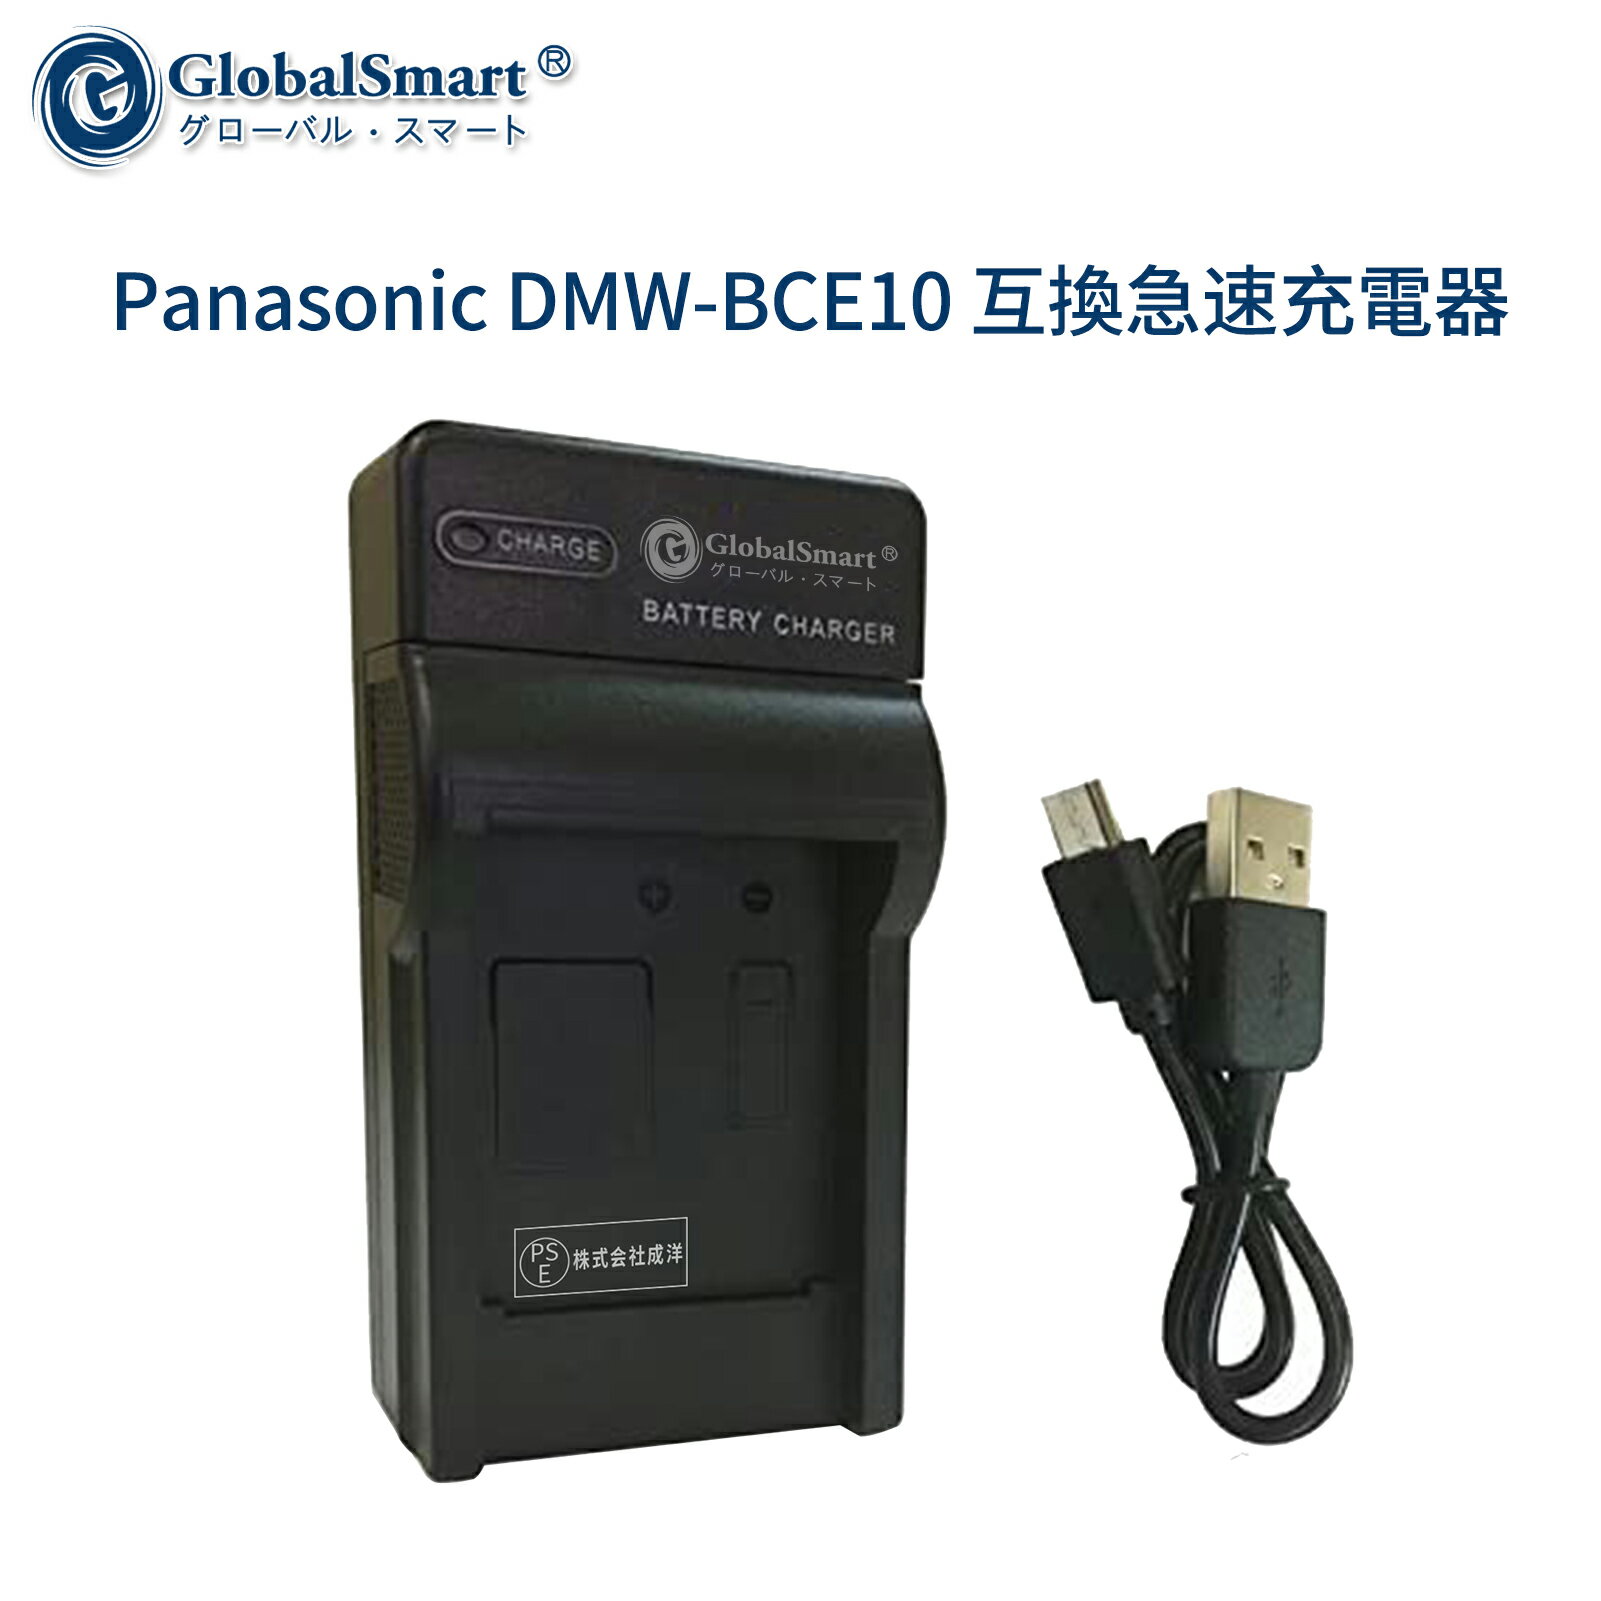 【1年保証】Panasonic DMW-BCE10 互換急速充電器USBチャージャー 【PSE認定済】 カメラバッテリー互換チャージャー【GlobalSmart】【日本国内倉庫発送】【送料無料】